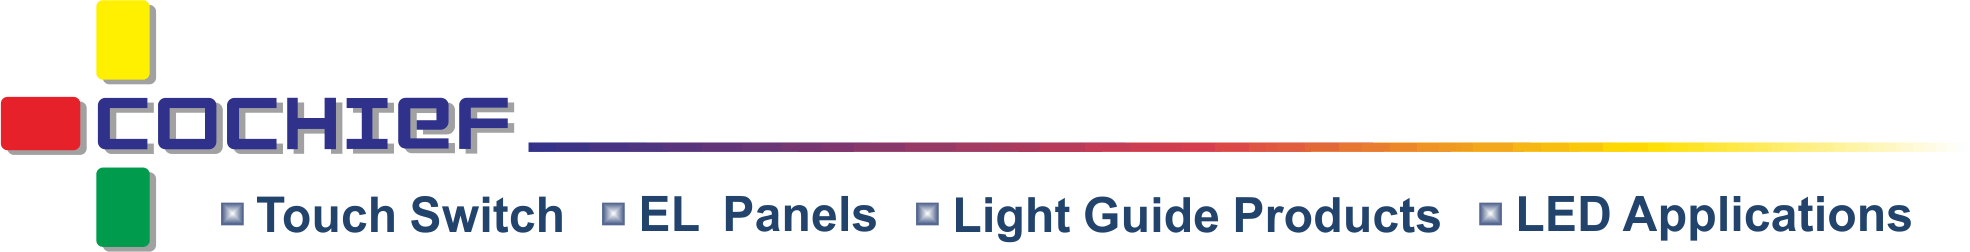 皓智企業股份有限公司 - 电容式智能光效触控模组、薄型触控膜、冷光、导光开发设计制造商。